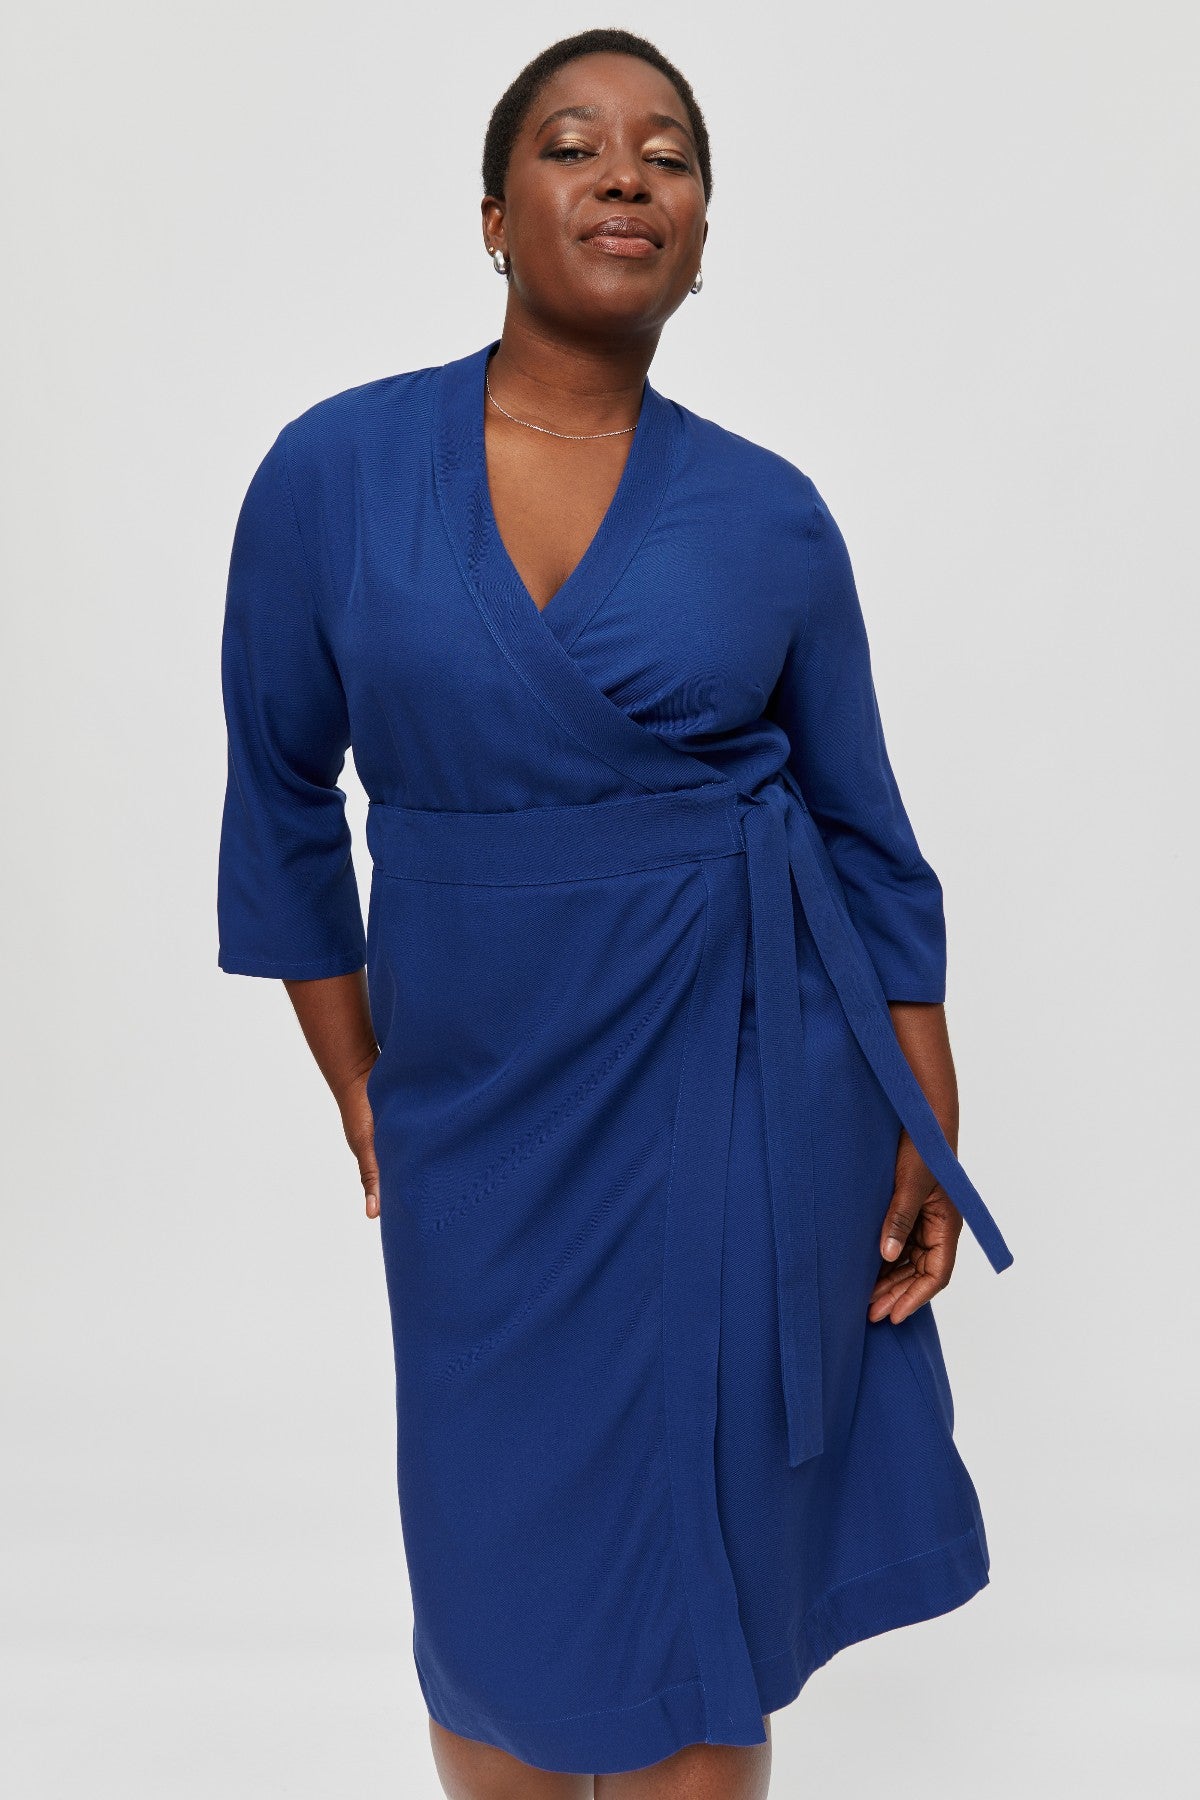 Blue wrap dress Sandra made of 100% viscose by Ayani